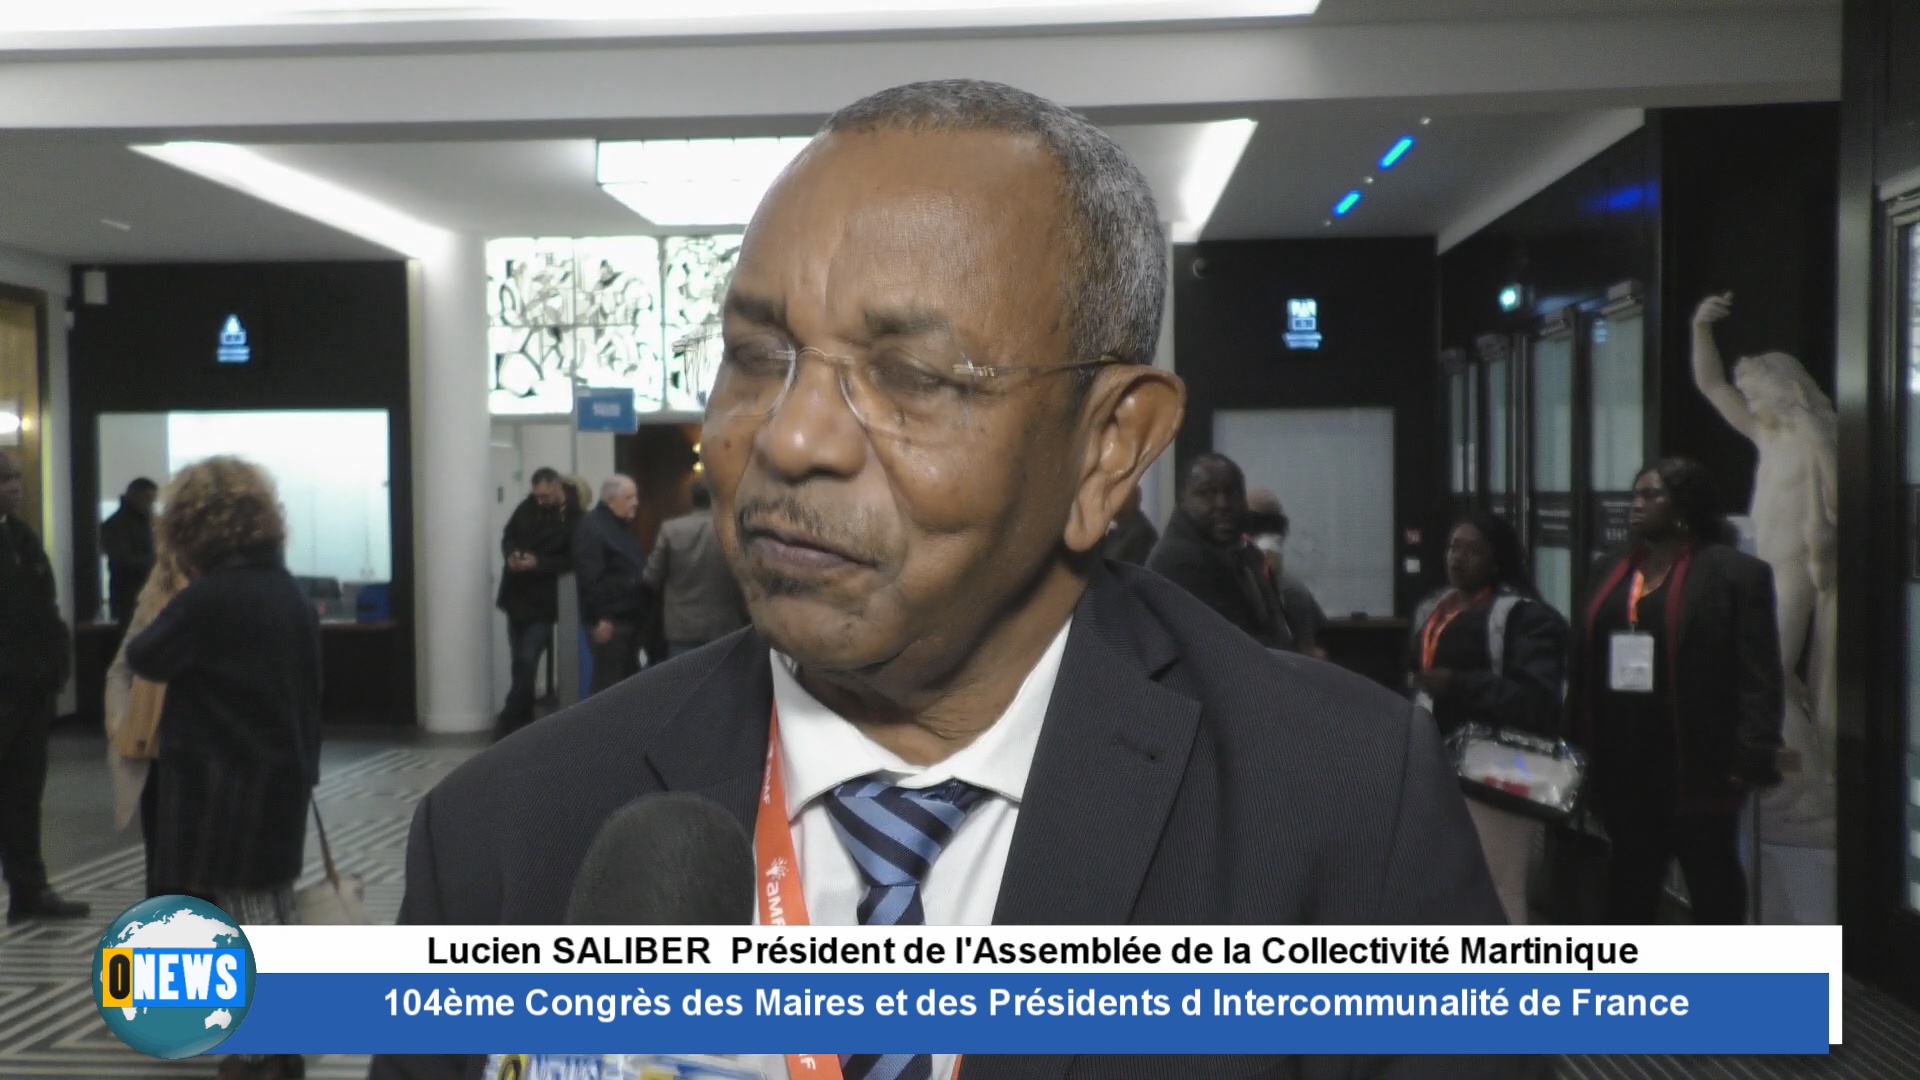 [Vidéo] 104 ème Congrès des Maires à Paris. Lucien SALIBER Président Assemblée Collectivité Martinique